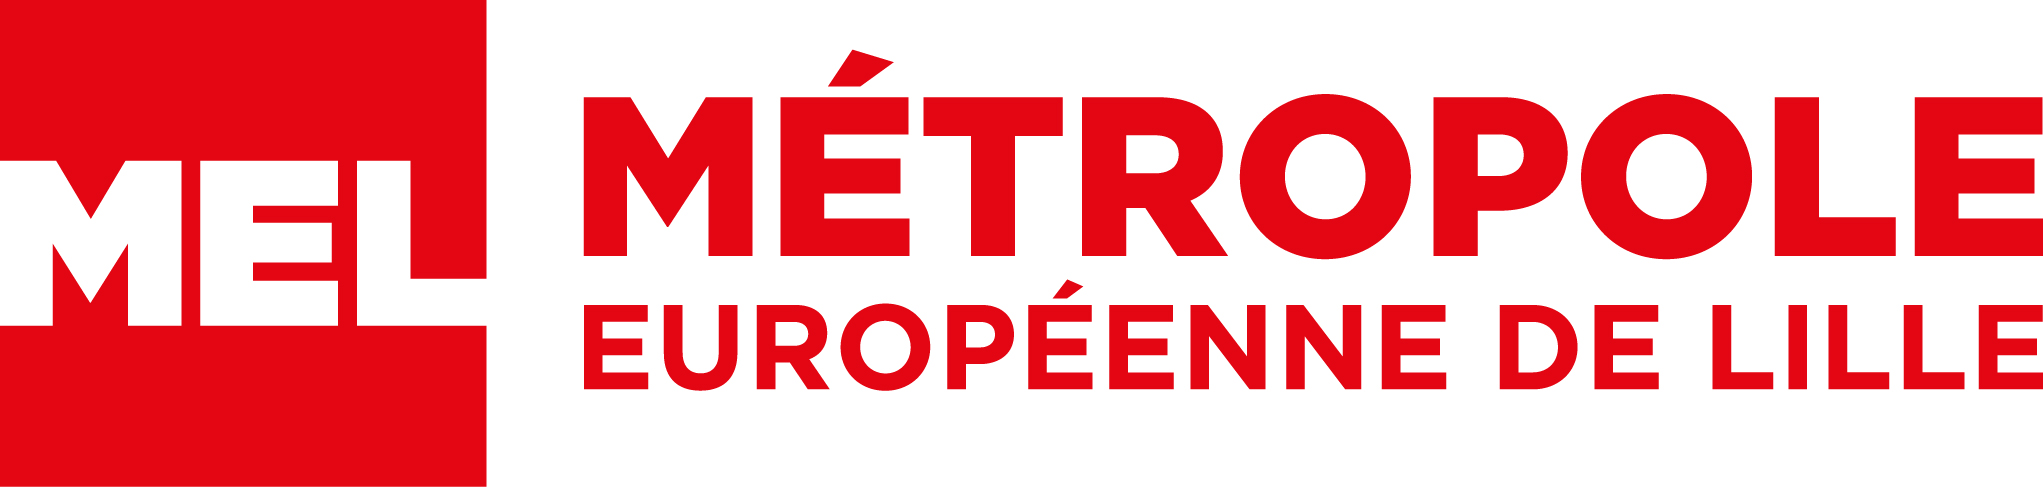 METROPOLE EUROPEENNE DE LILLE logo